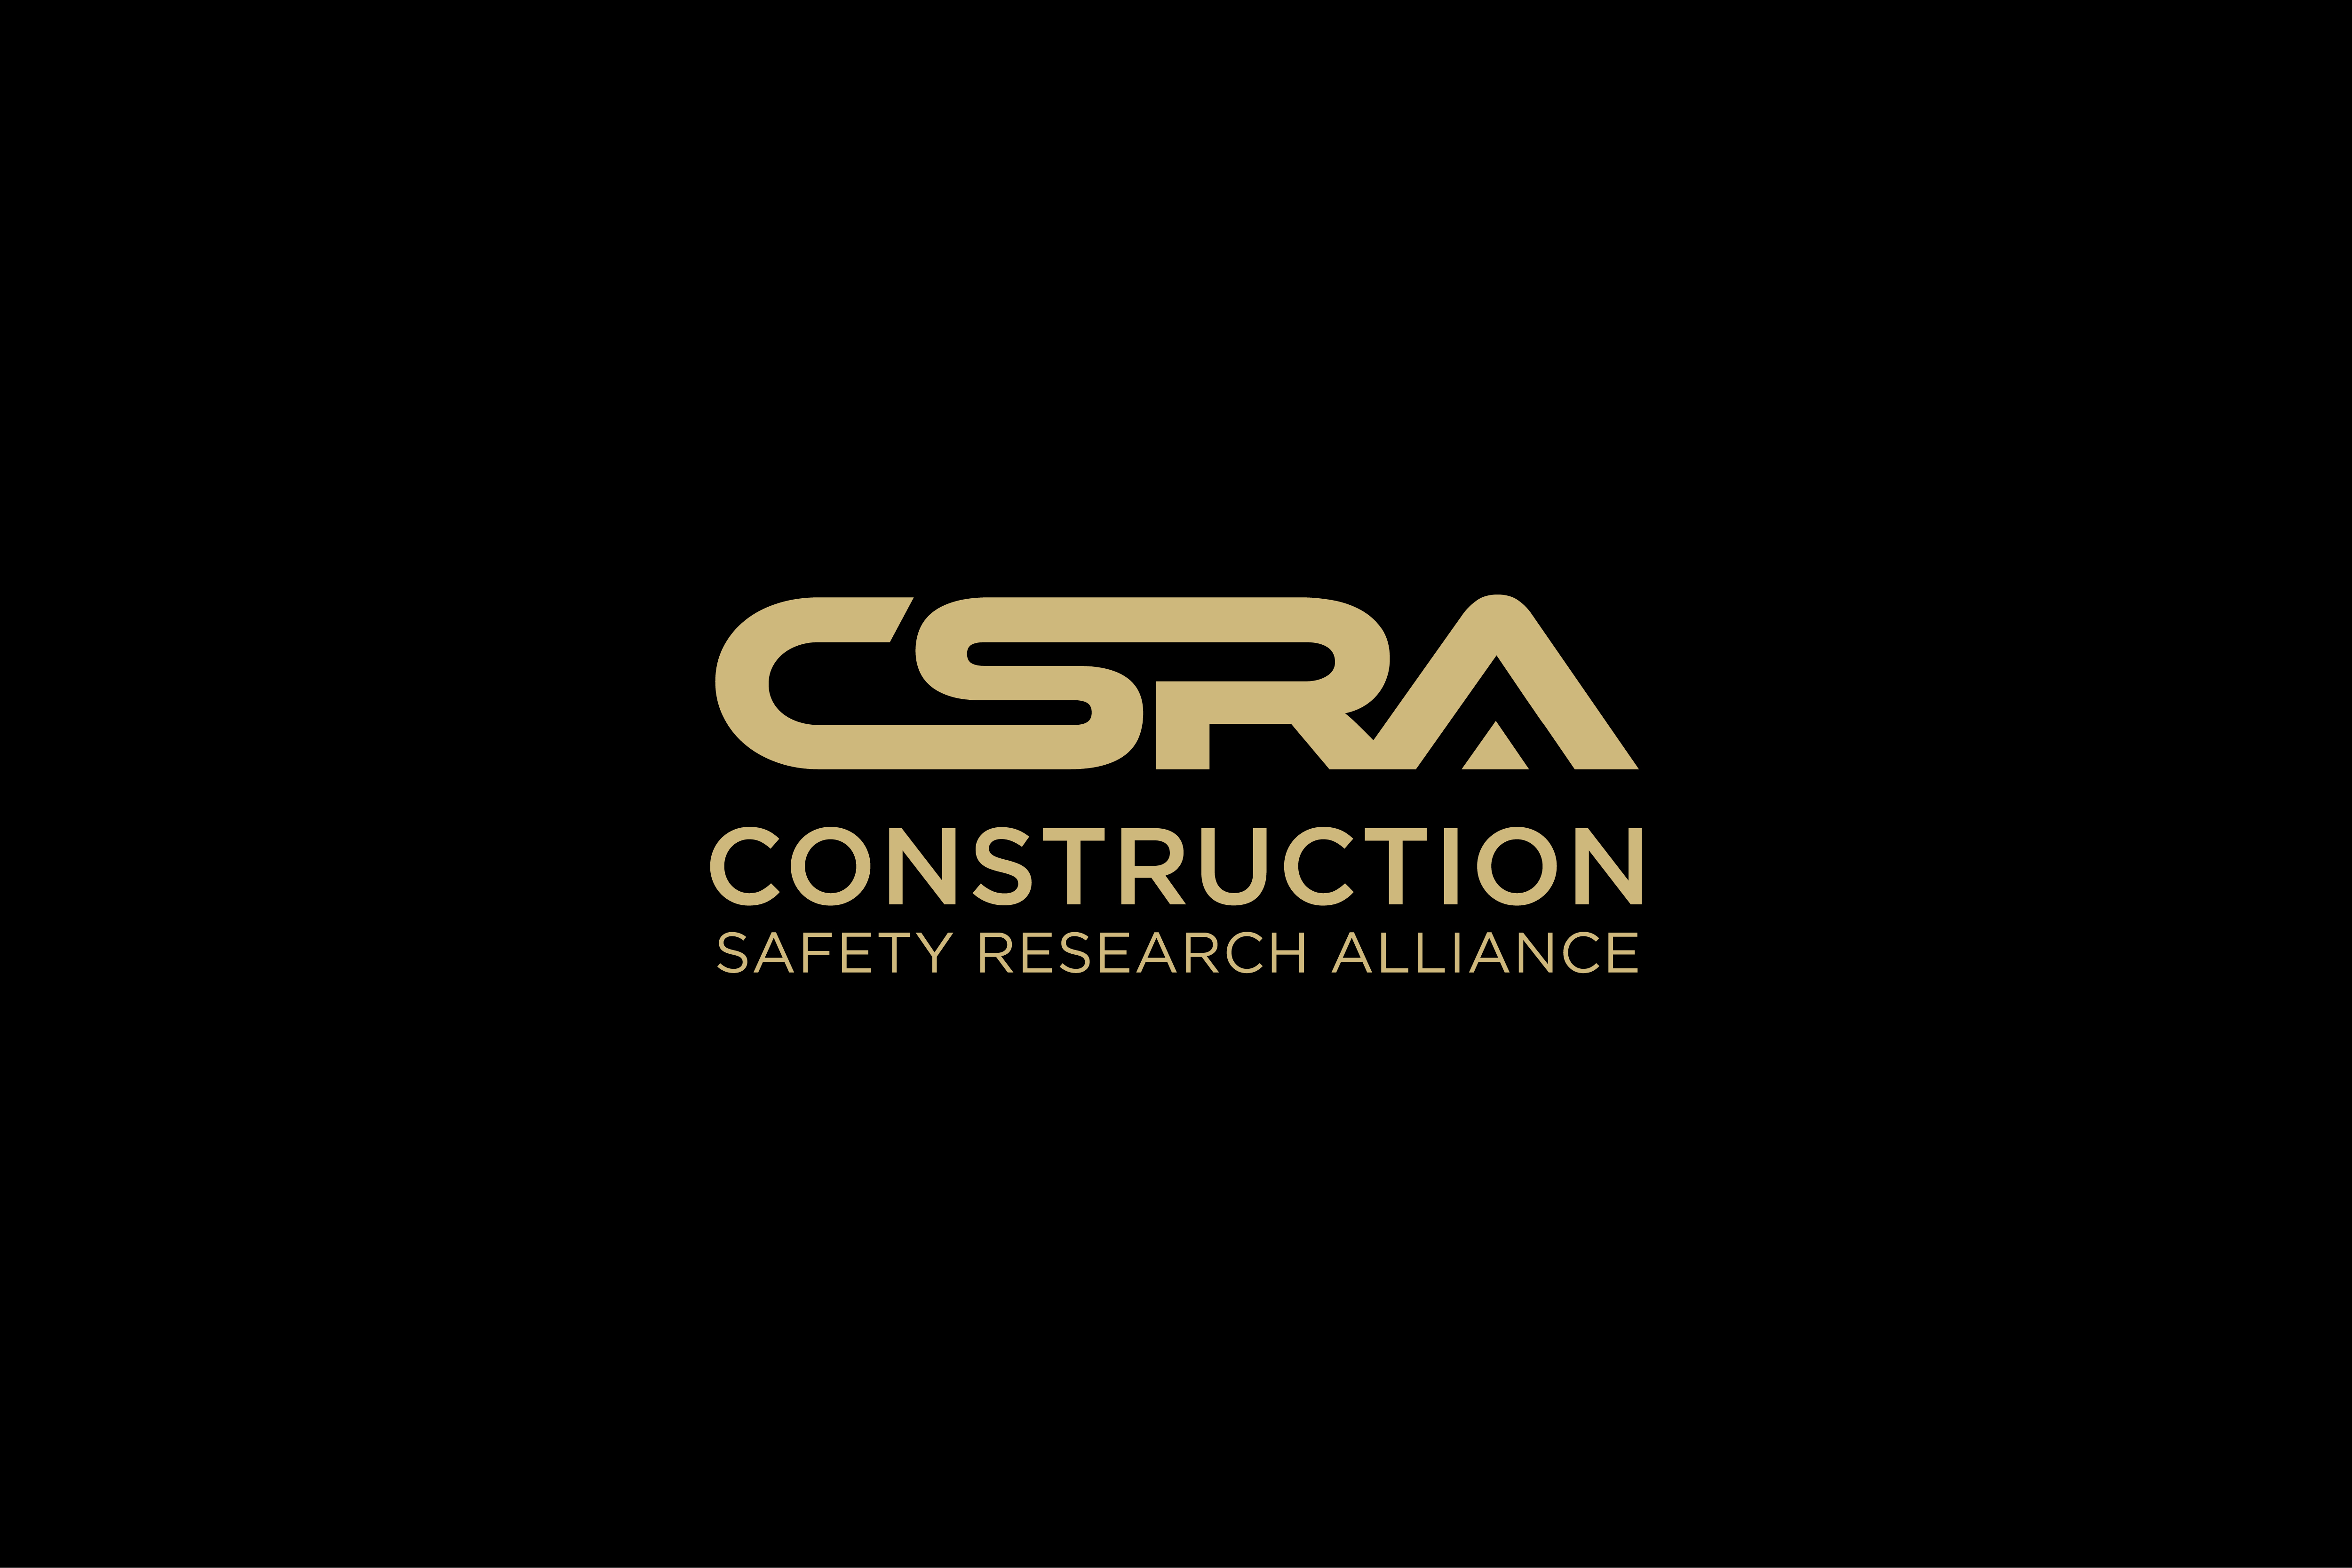 CSRA logo